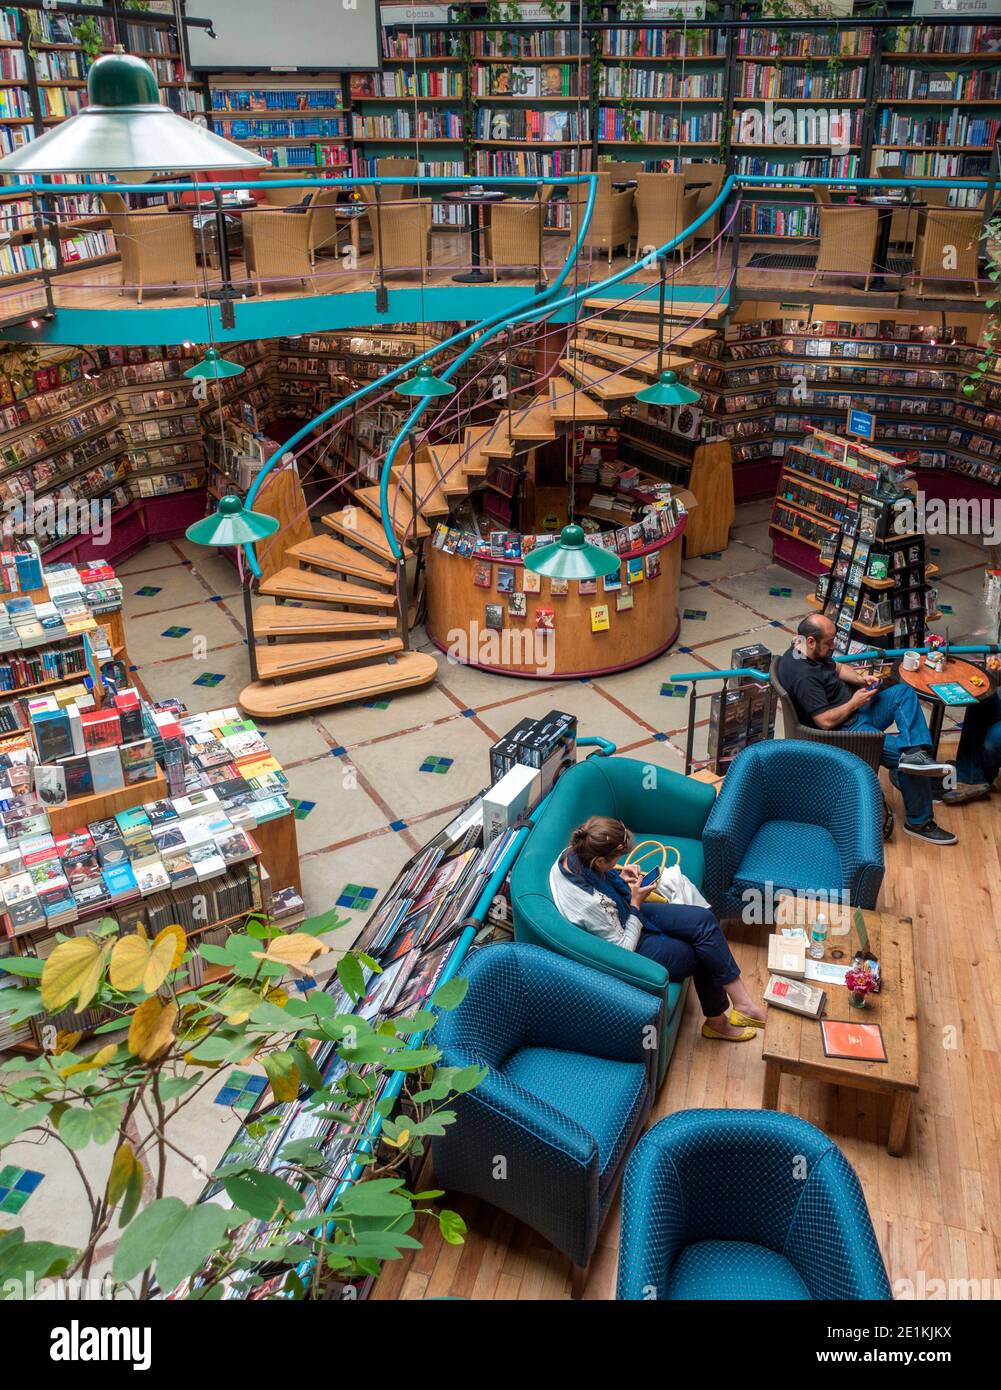 El Pendulo cafeteria and bookstore, Polanco, Mexico City, Mexico Stock Photo